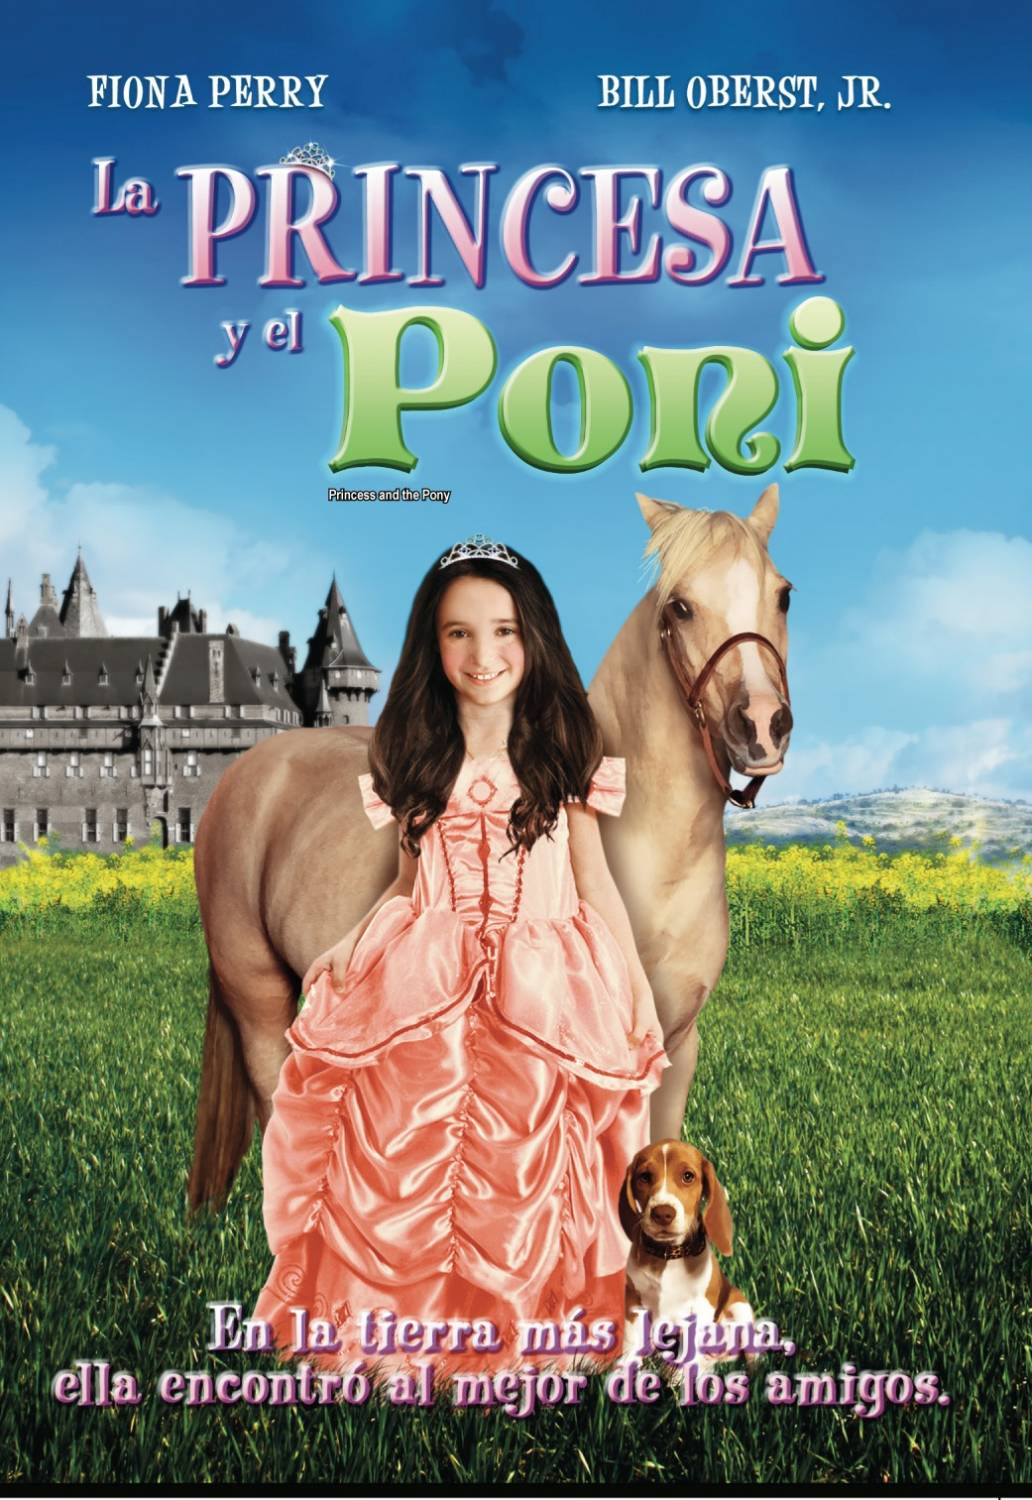 Принцесса и пони (2011) DVDRip